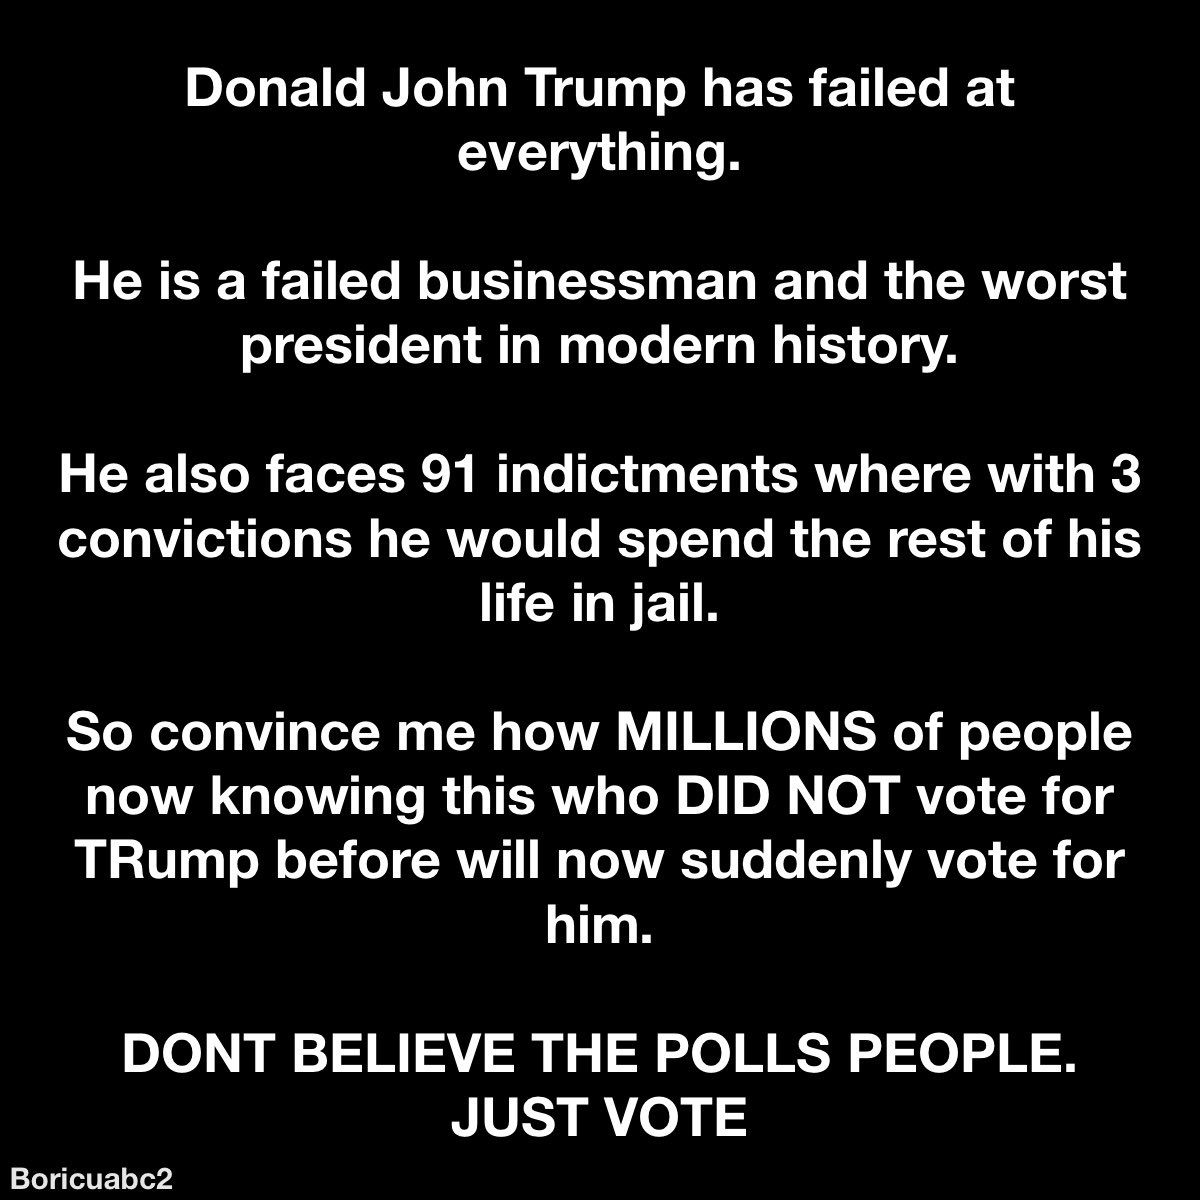 Trump is a failure